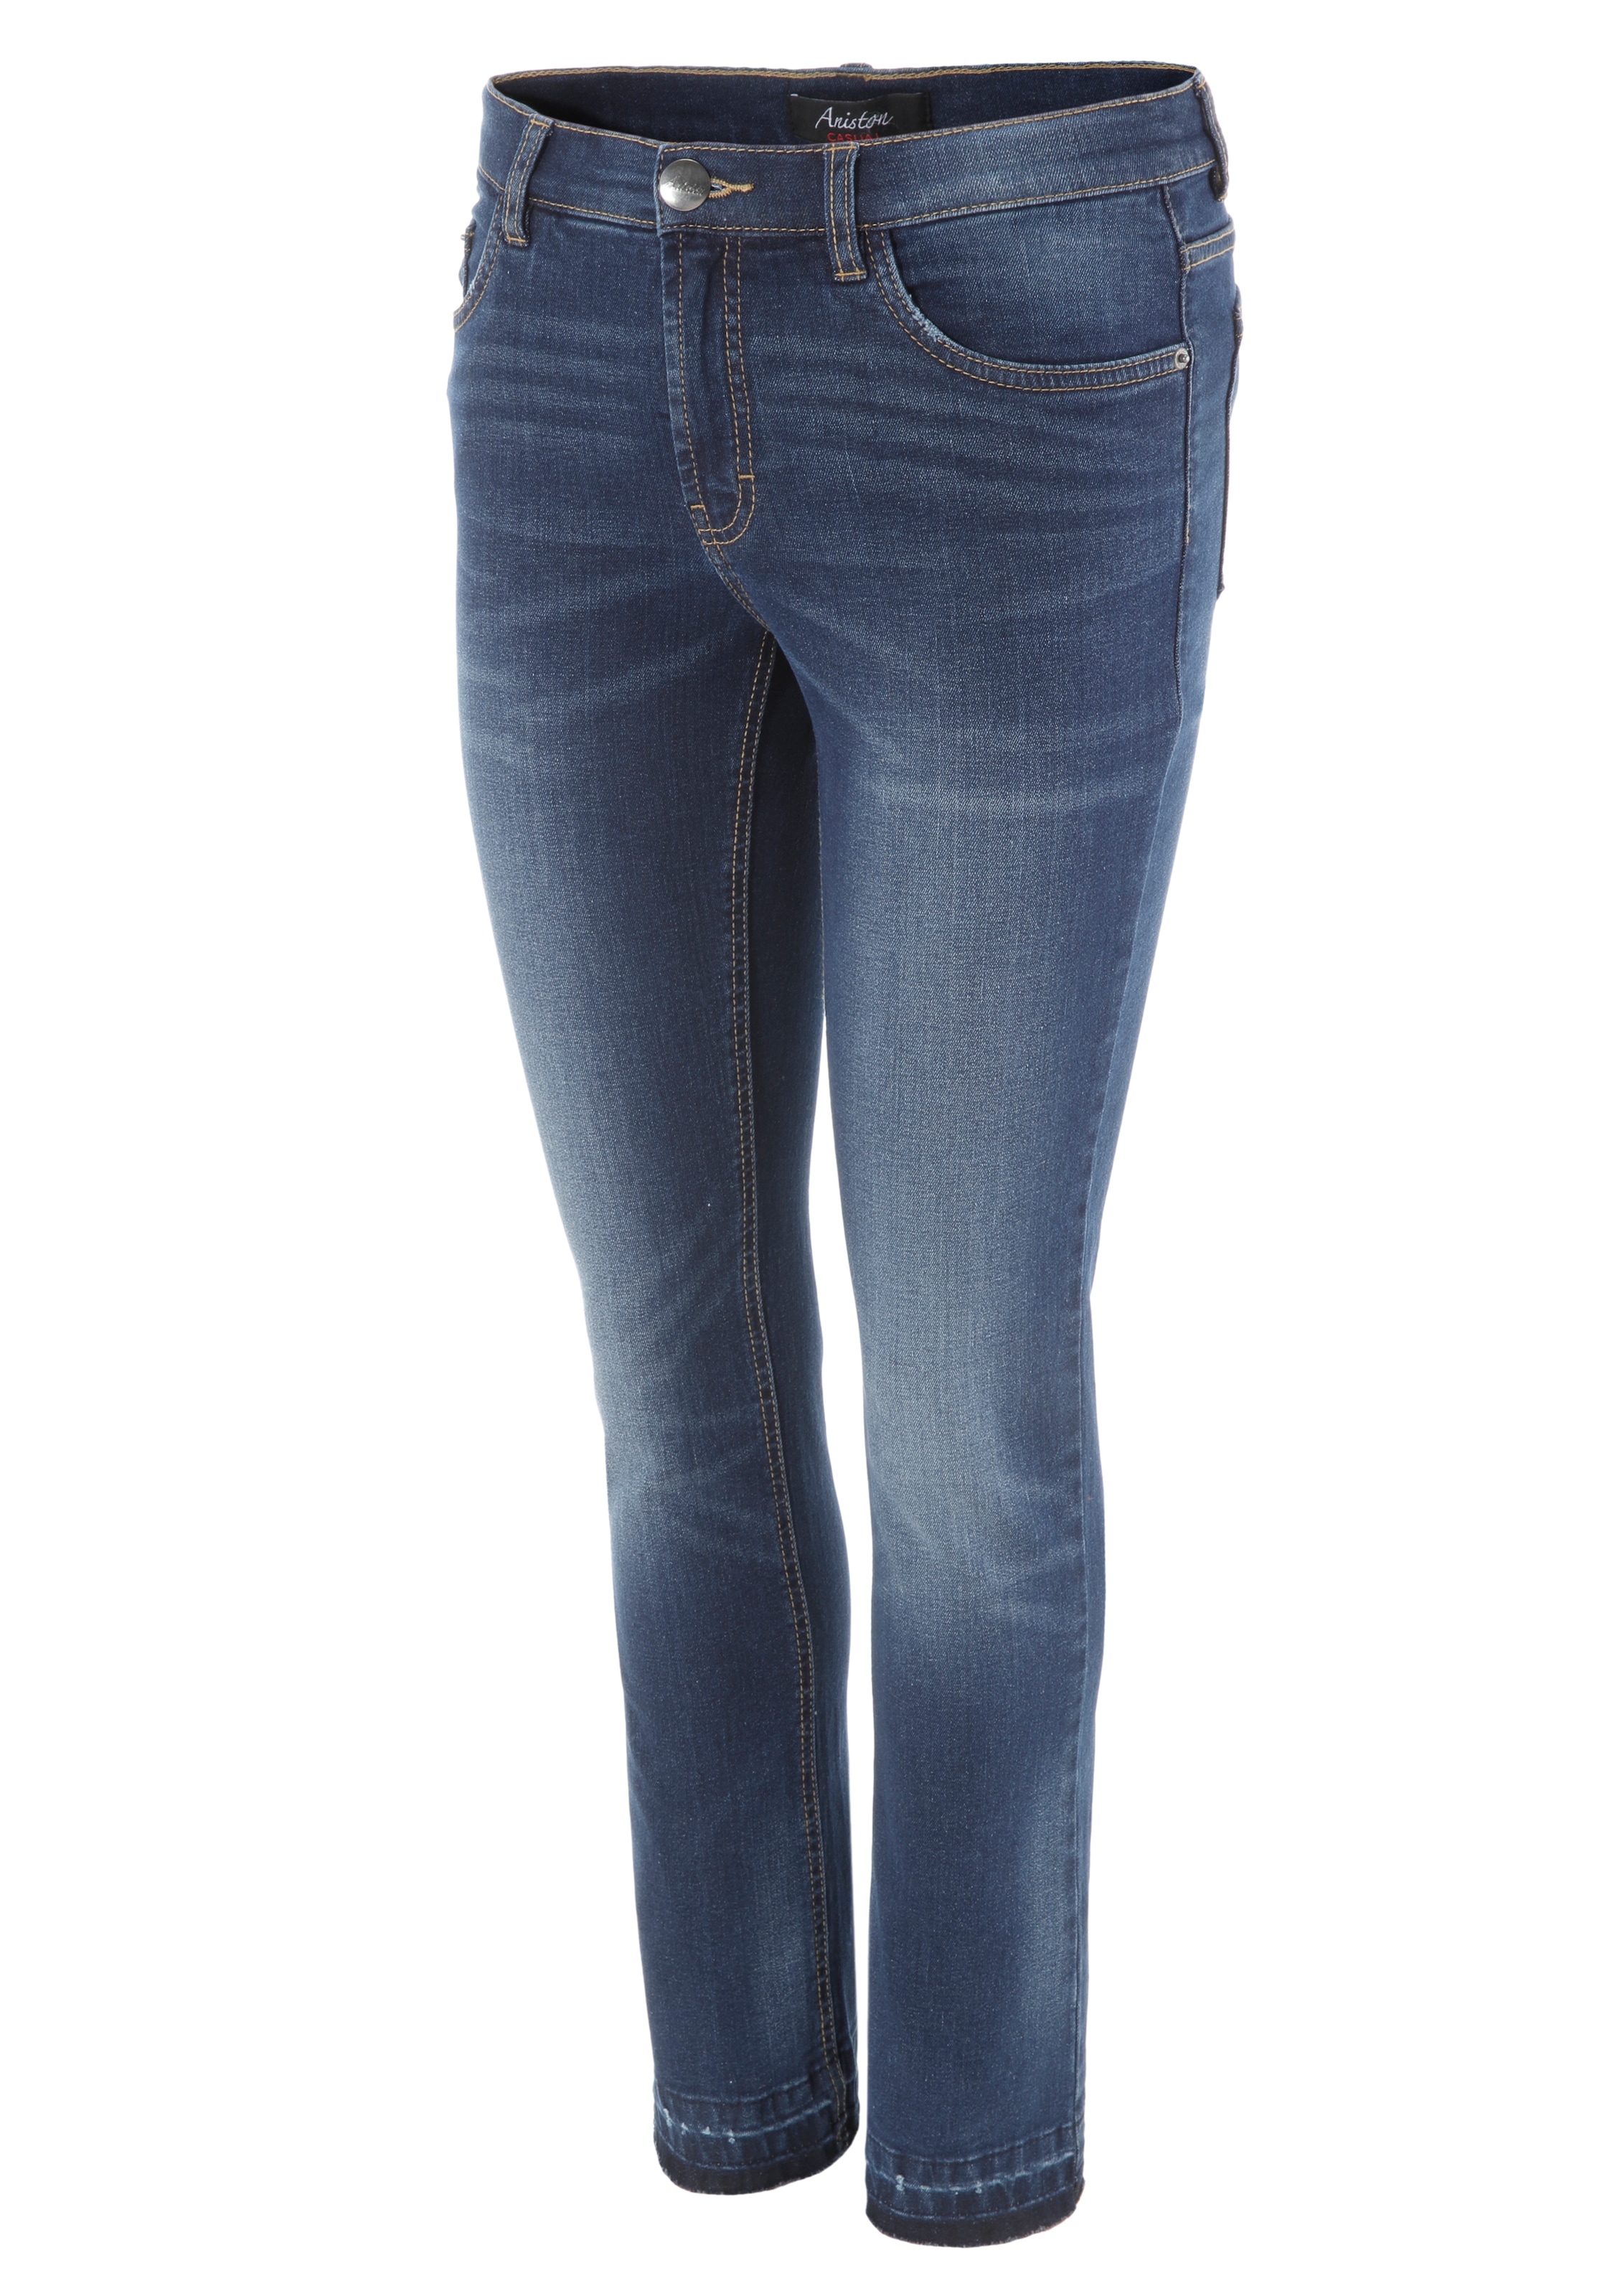 Aniston CASUAL Bootcut-Jeans, mit Waschung Beinabschluss shoppen leicht am trendiger ausgefranstem